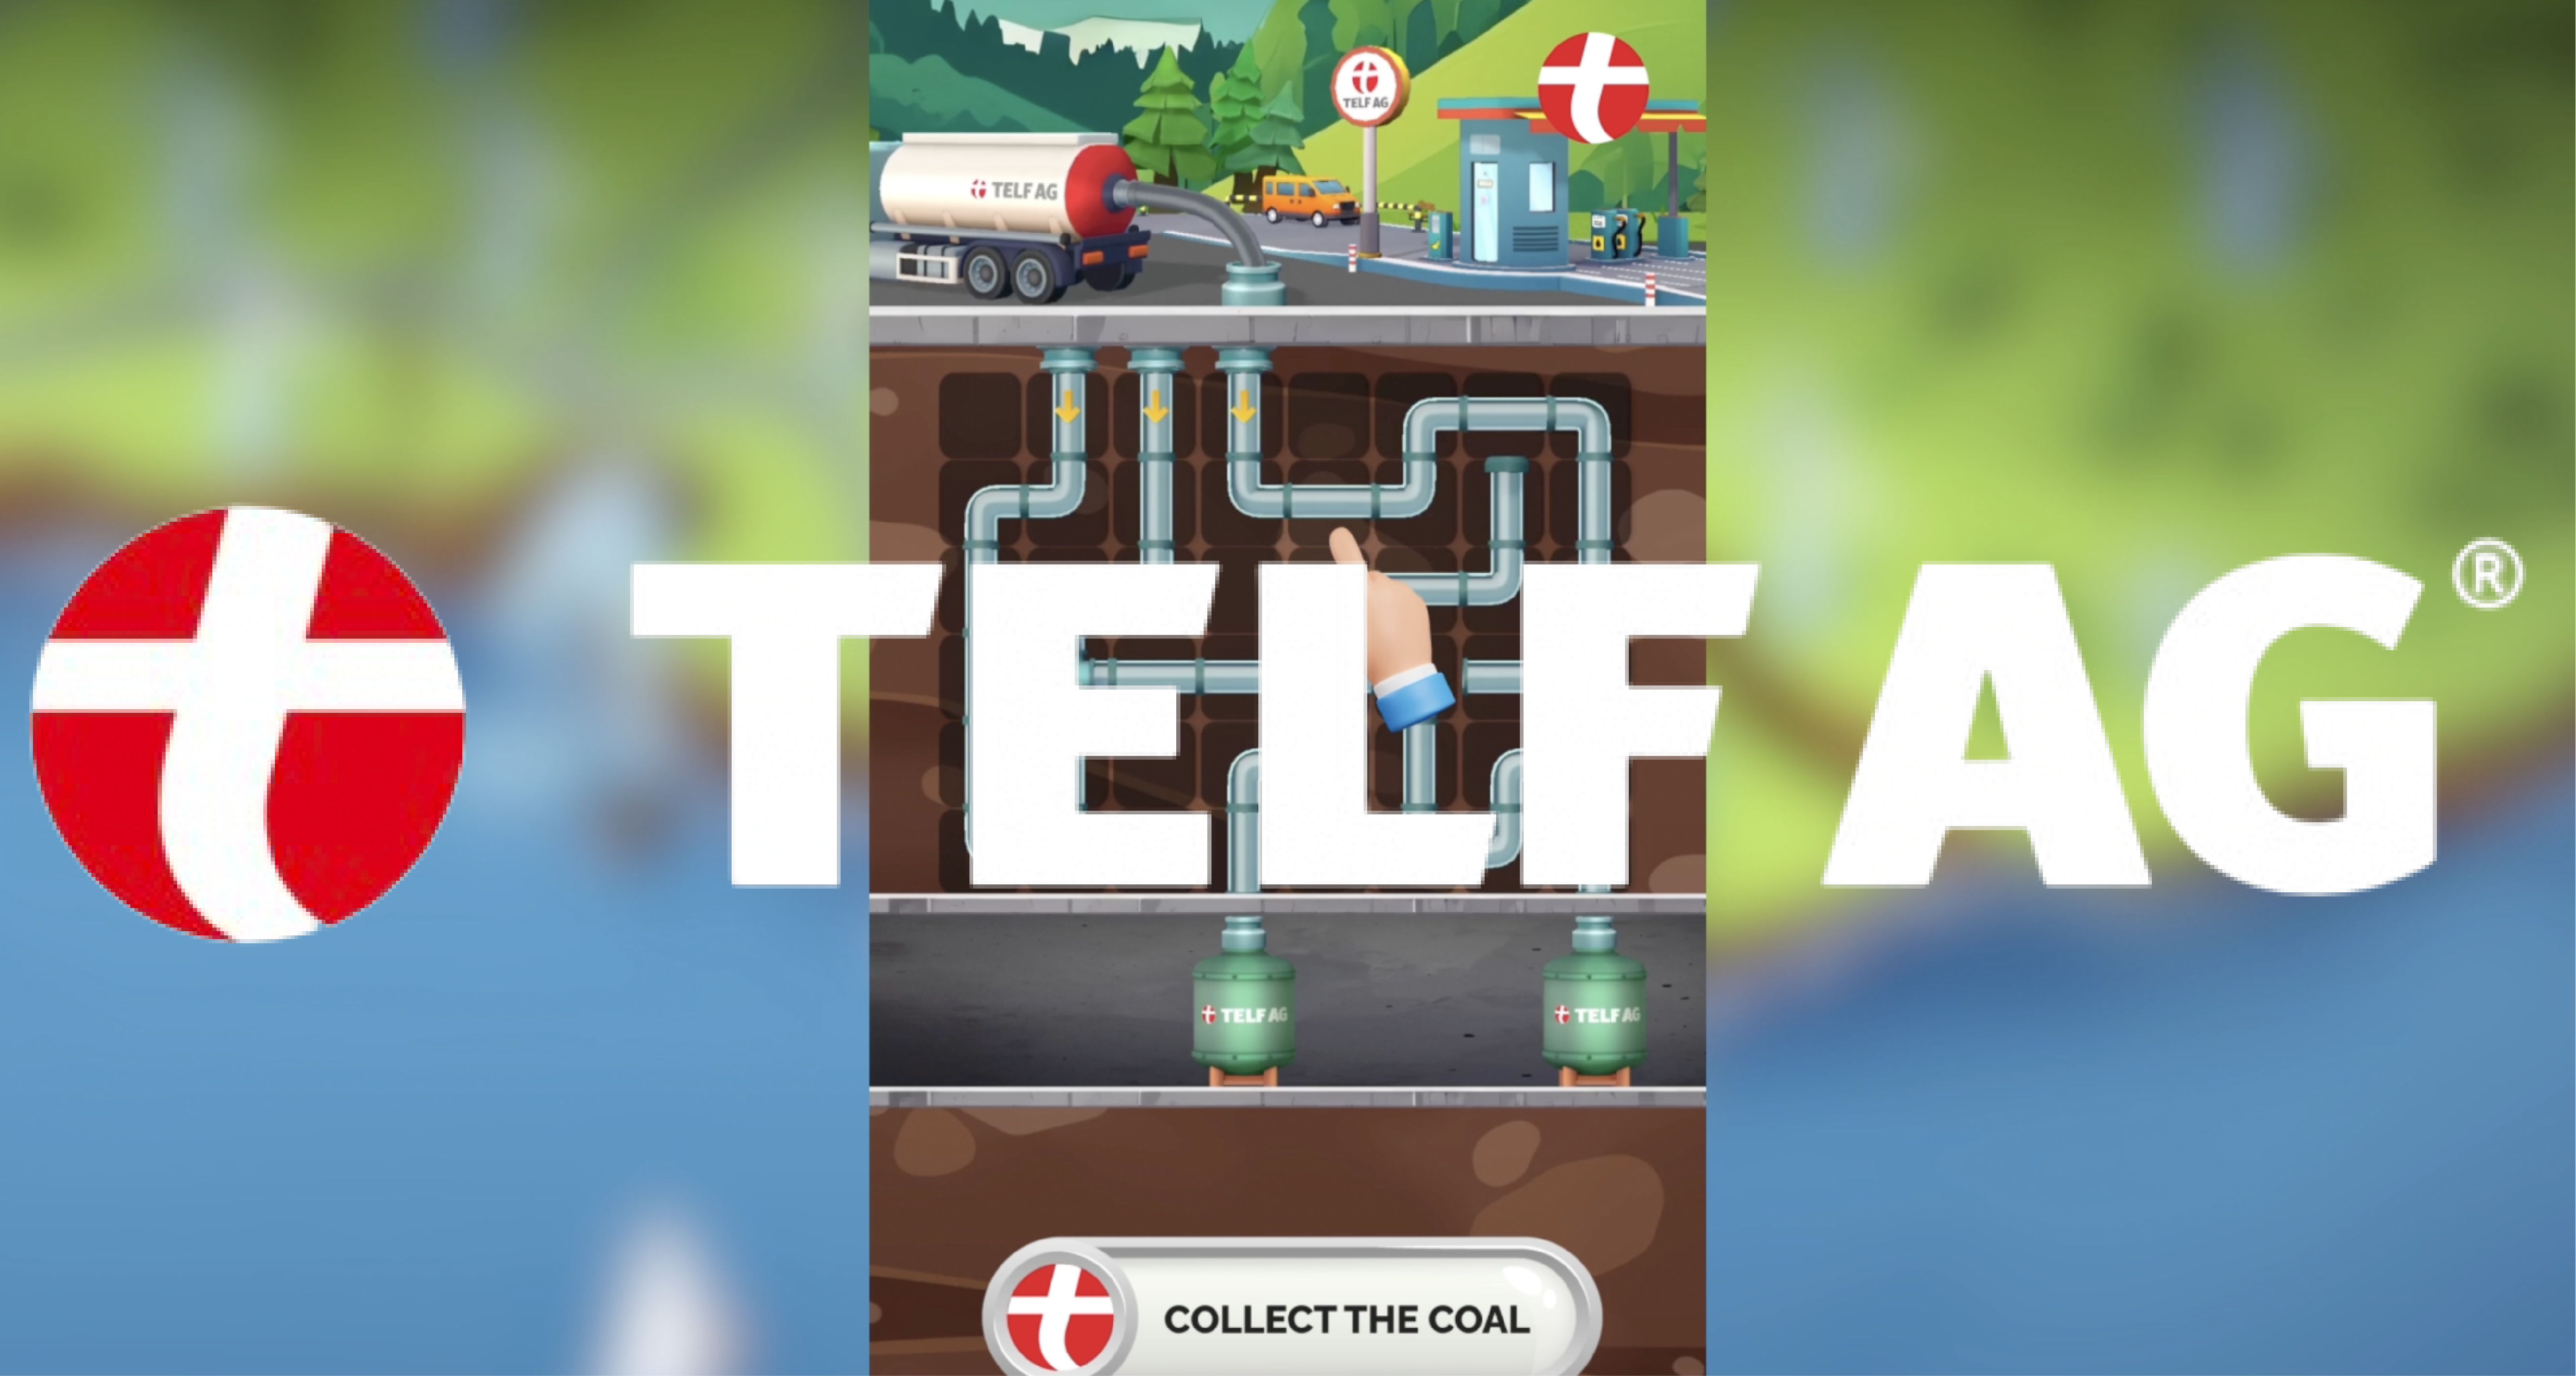 фото: Telf AG: уникальная стратегическая игра, нацеленная на достижение успеха